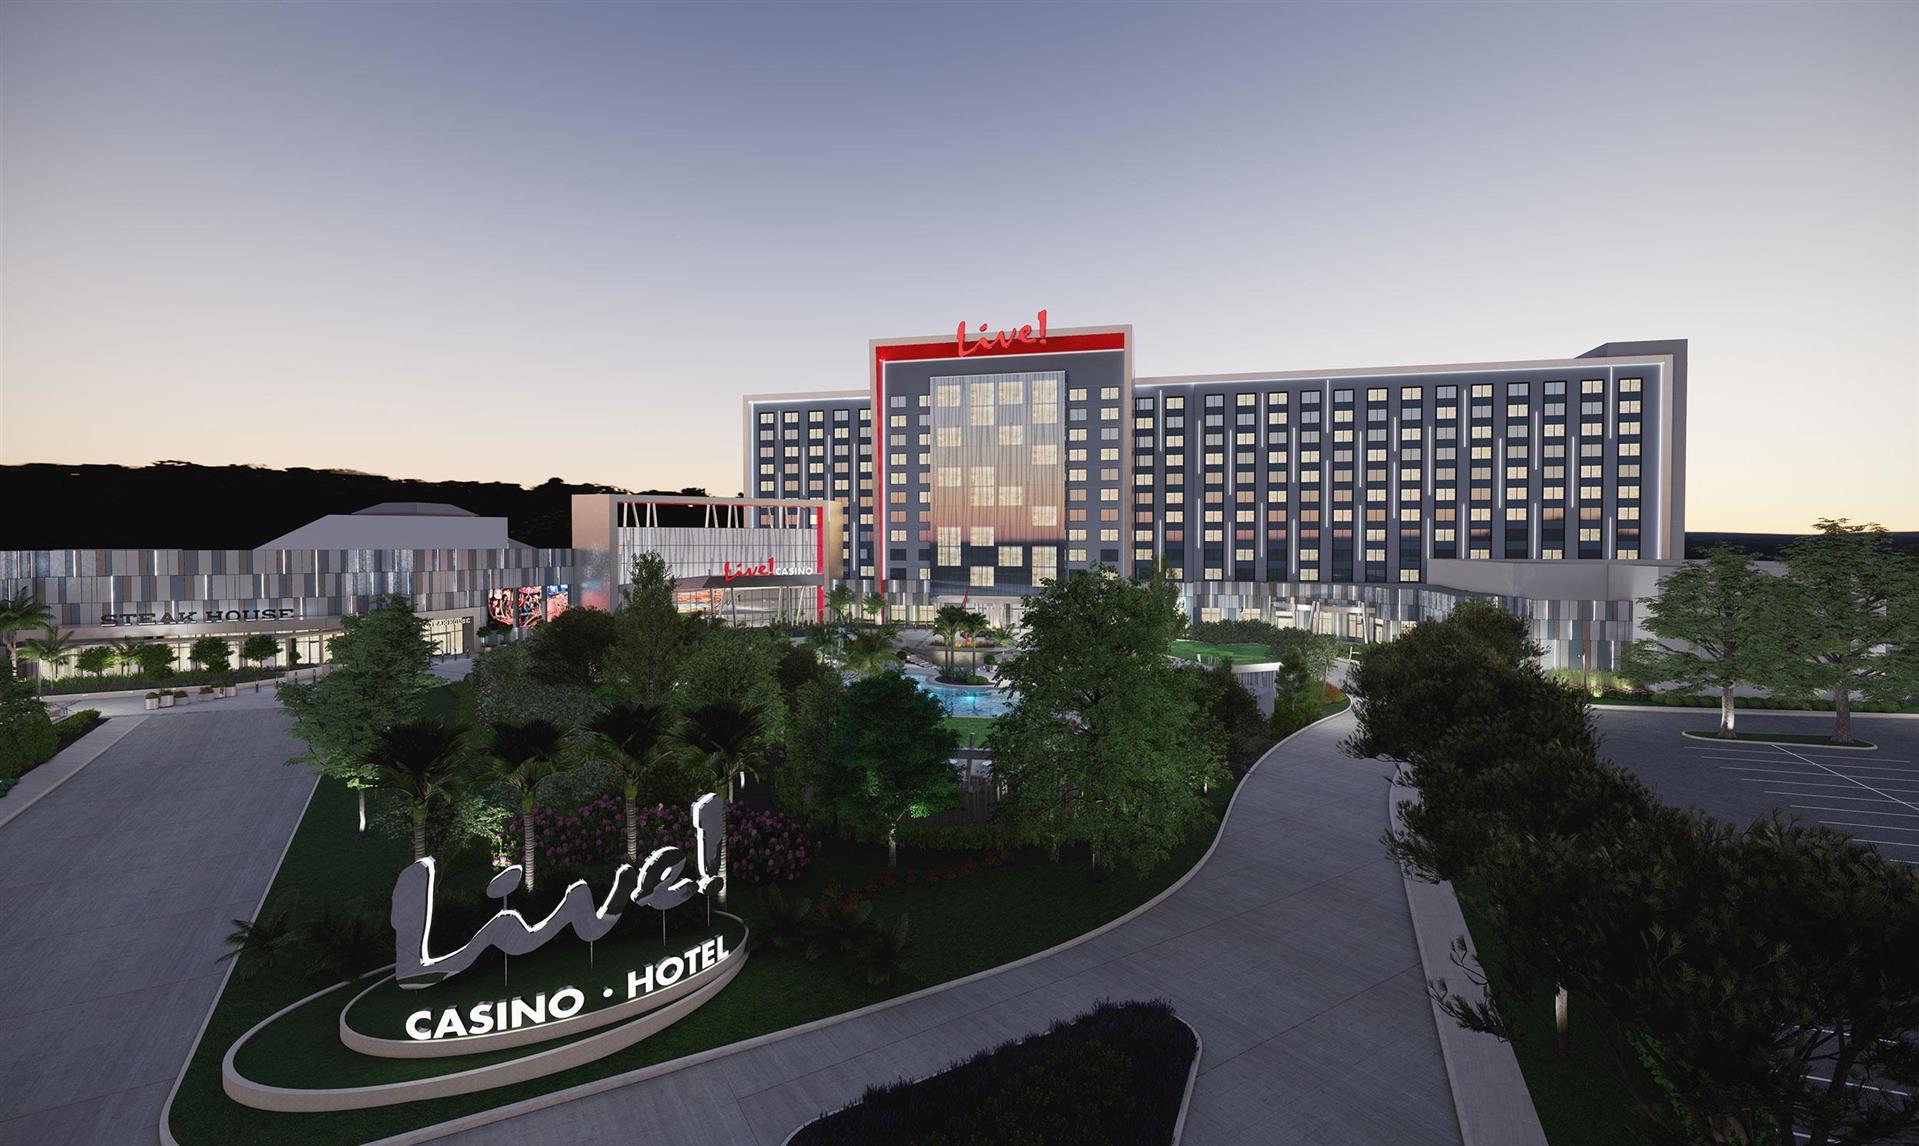 Live! Casino & Hotel Louisiana in Bossier City, LA